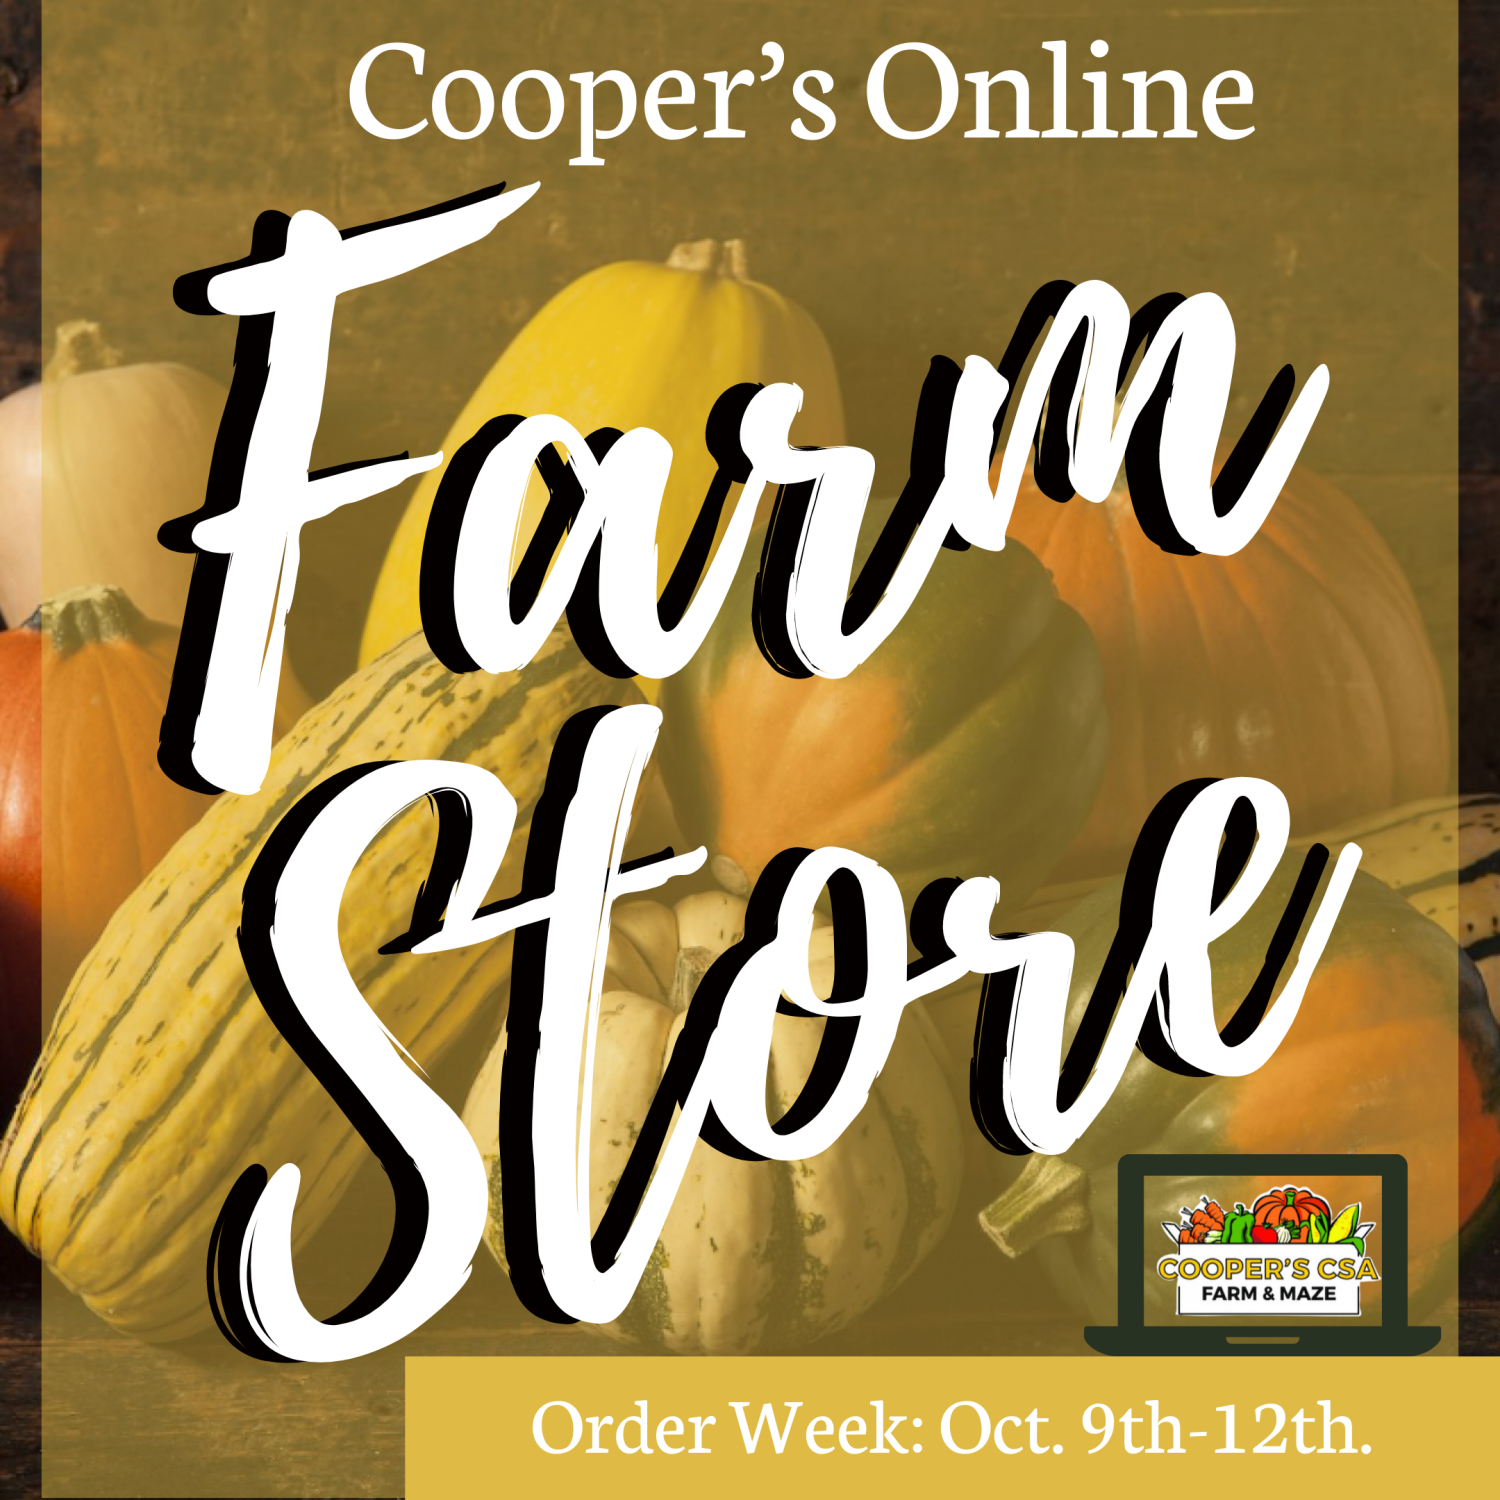 Previous Happening: Coopers CSA Online FarmStore- Order Week 19